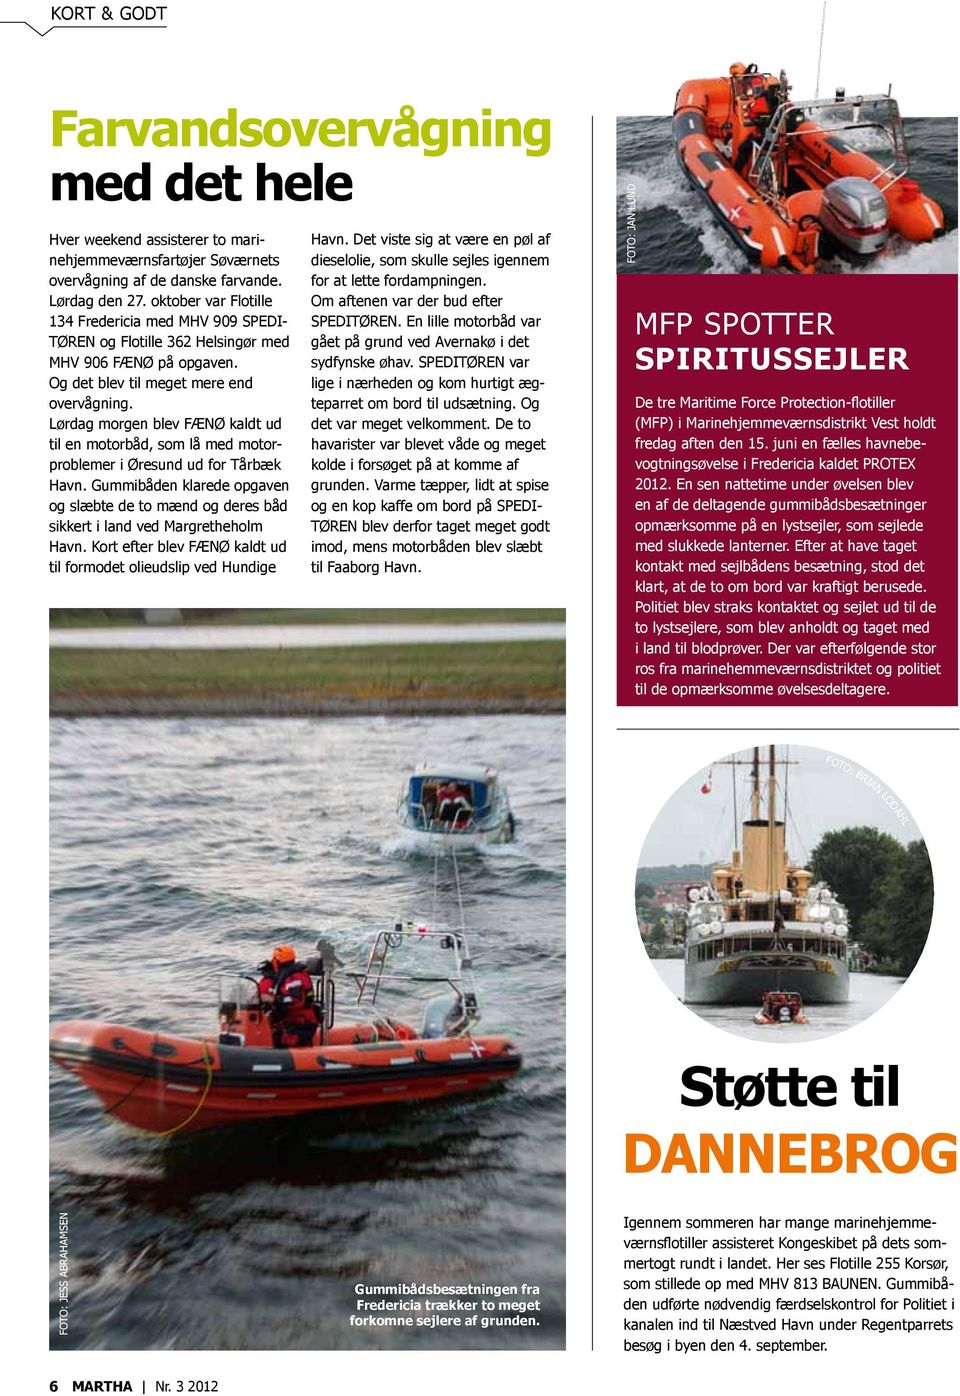 Lørdag morgen blev FÆNØ kaldt ud til en motorbåd, som lå med motorproblemer i Øresund ud for Tårbæk Havn.